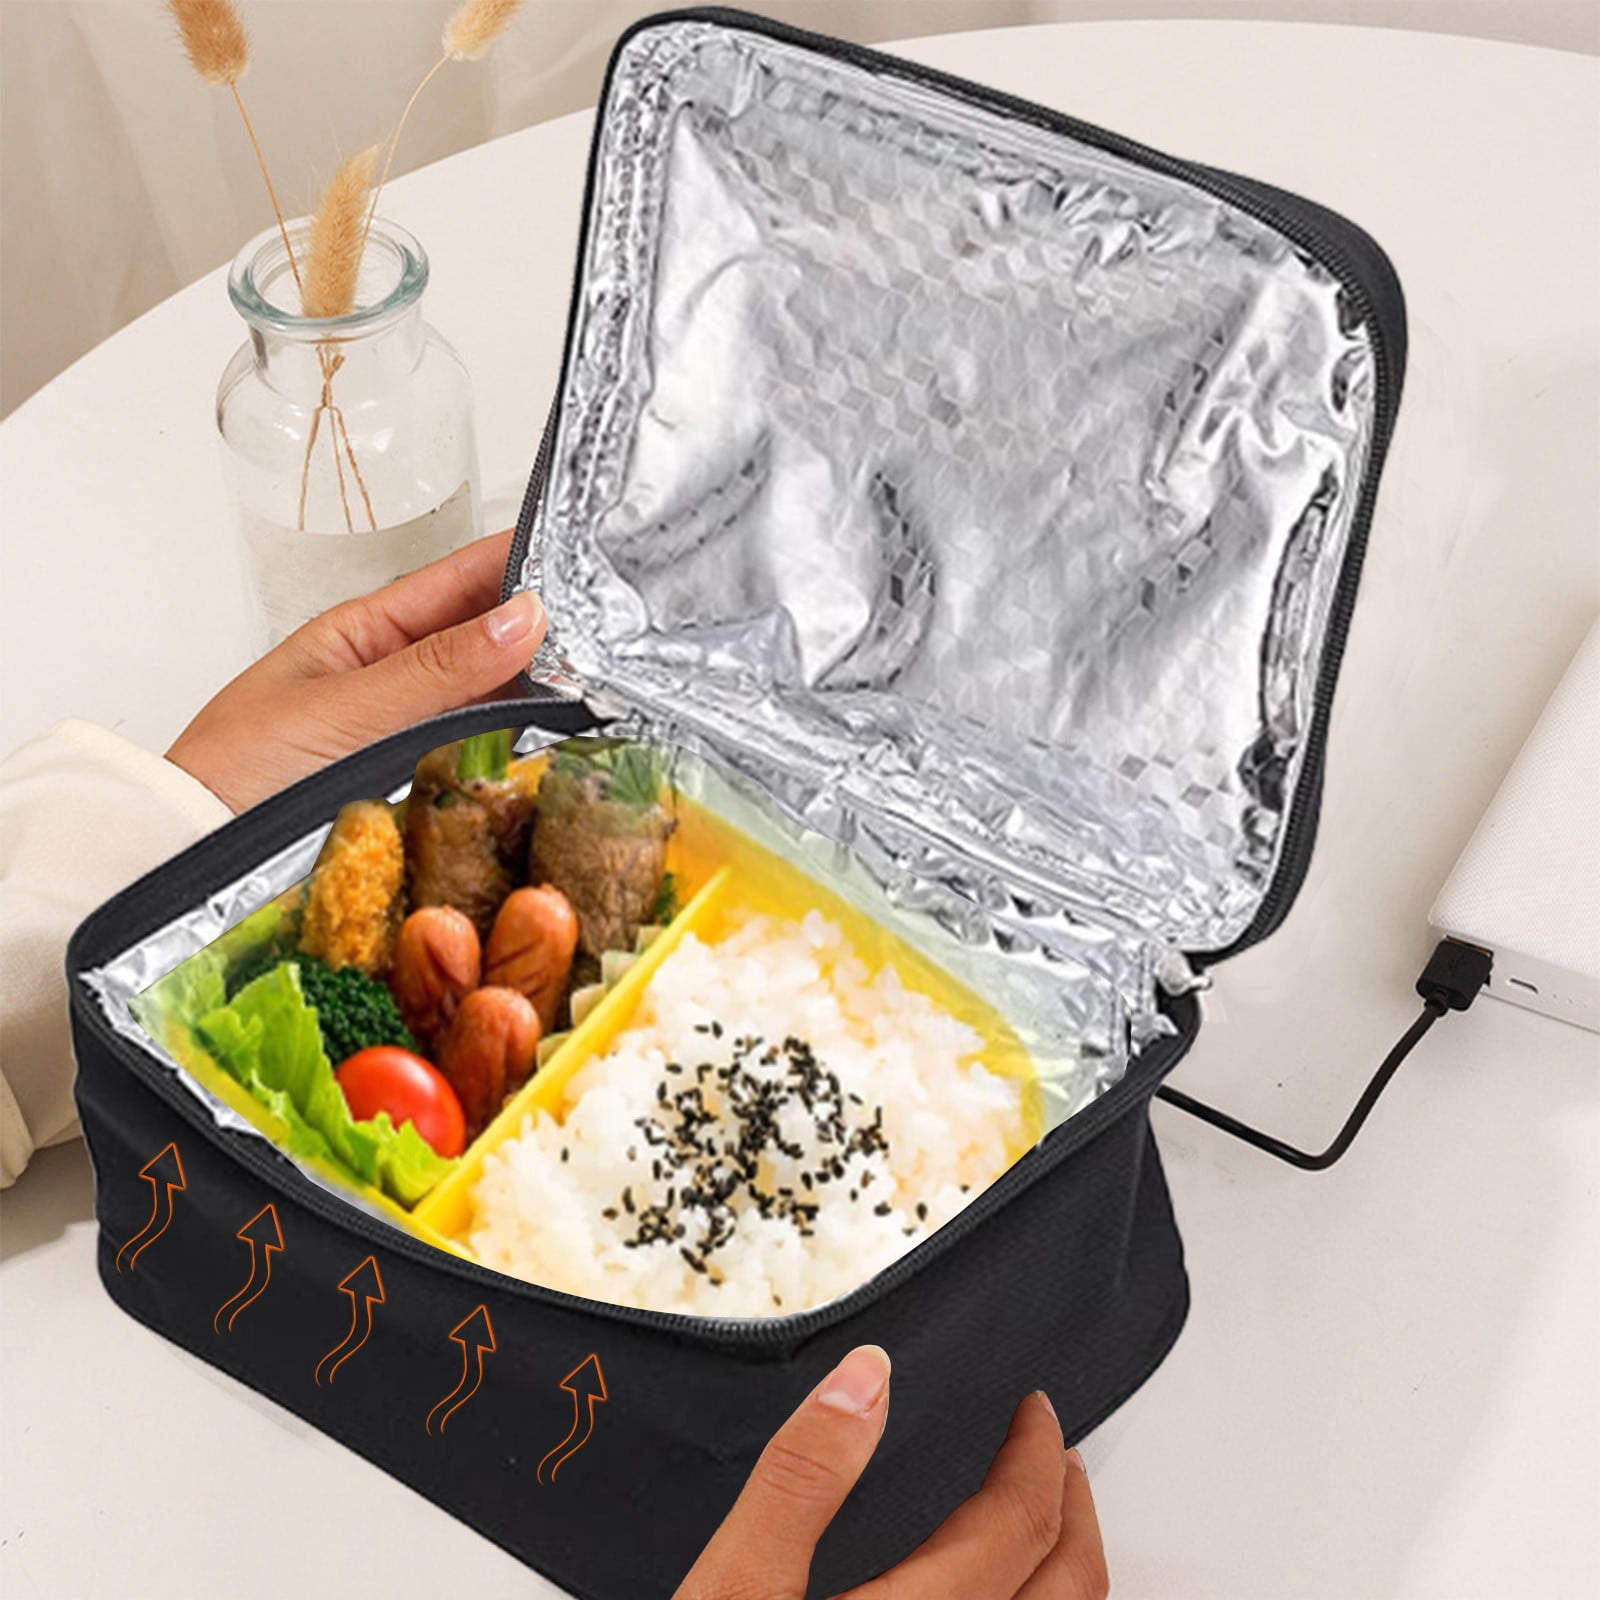 Portable Food Warmer Lunch Box, USB Food Warmer Electric Lunch Box